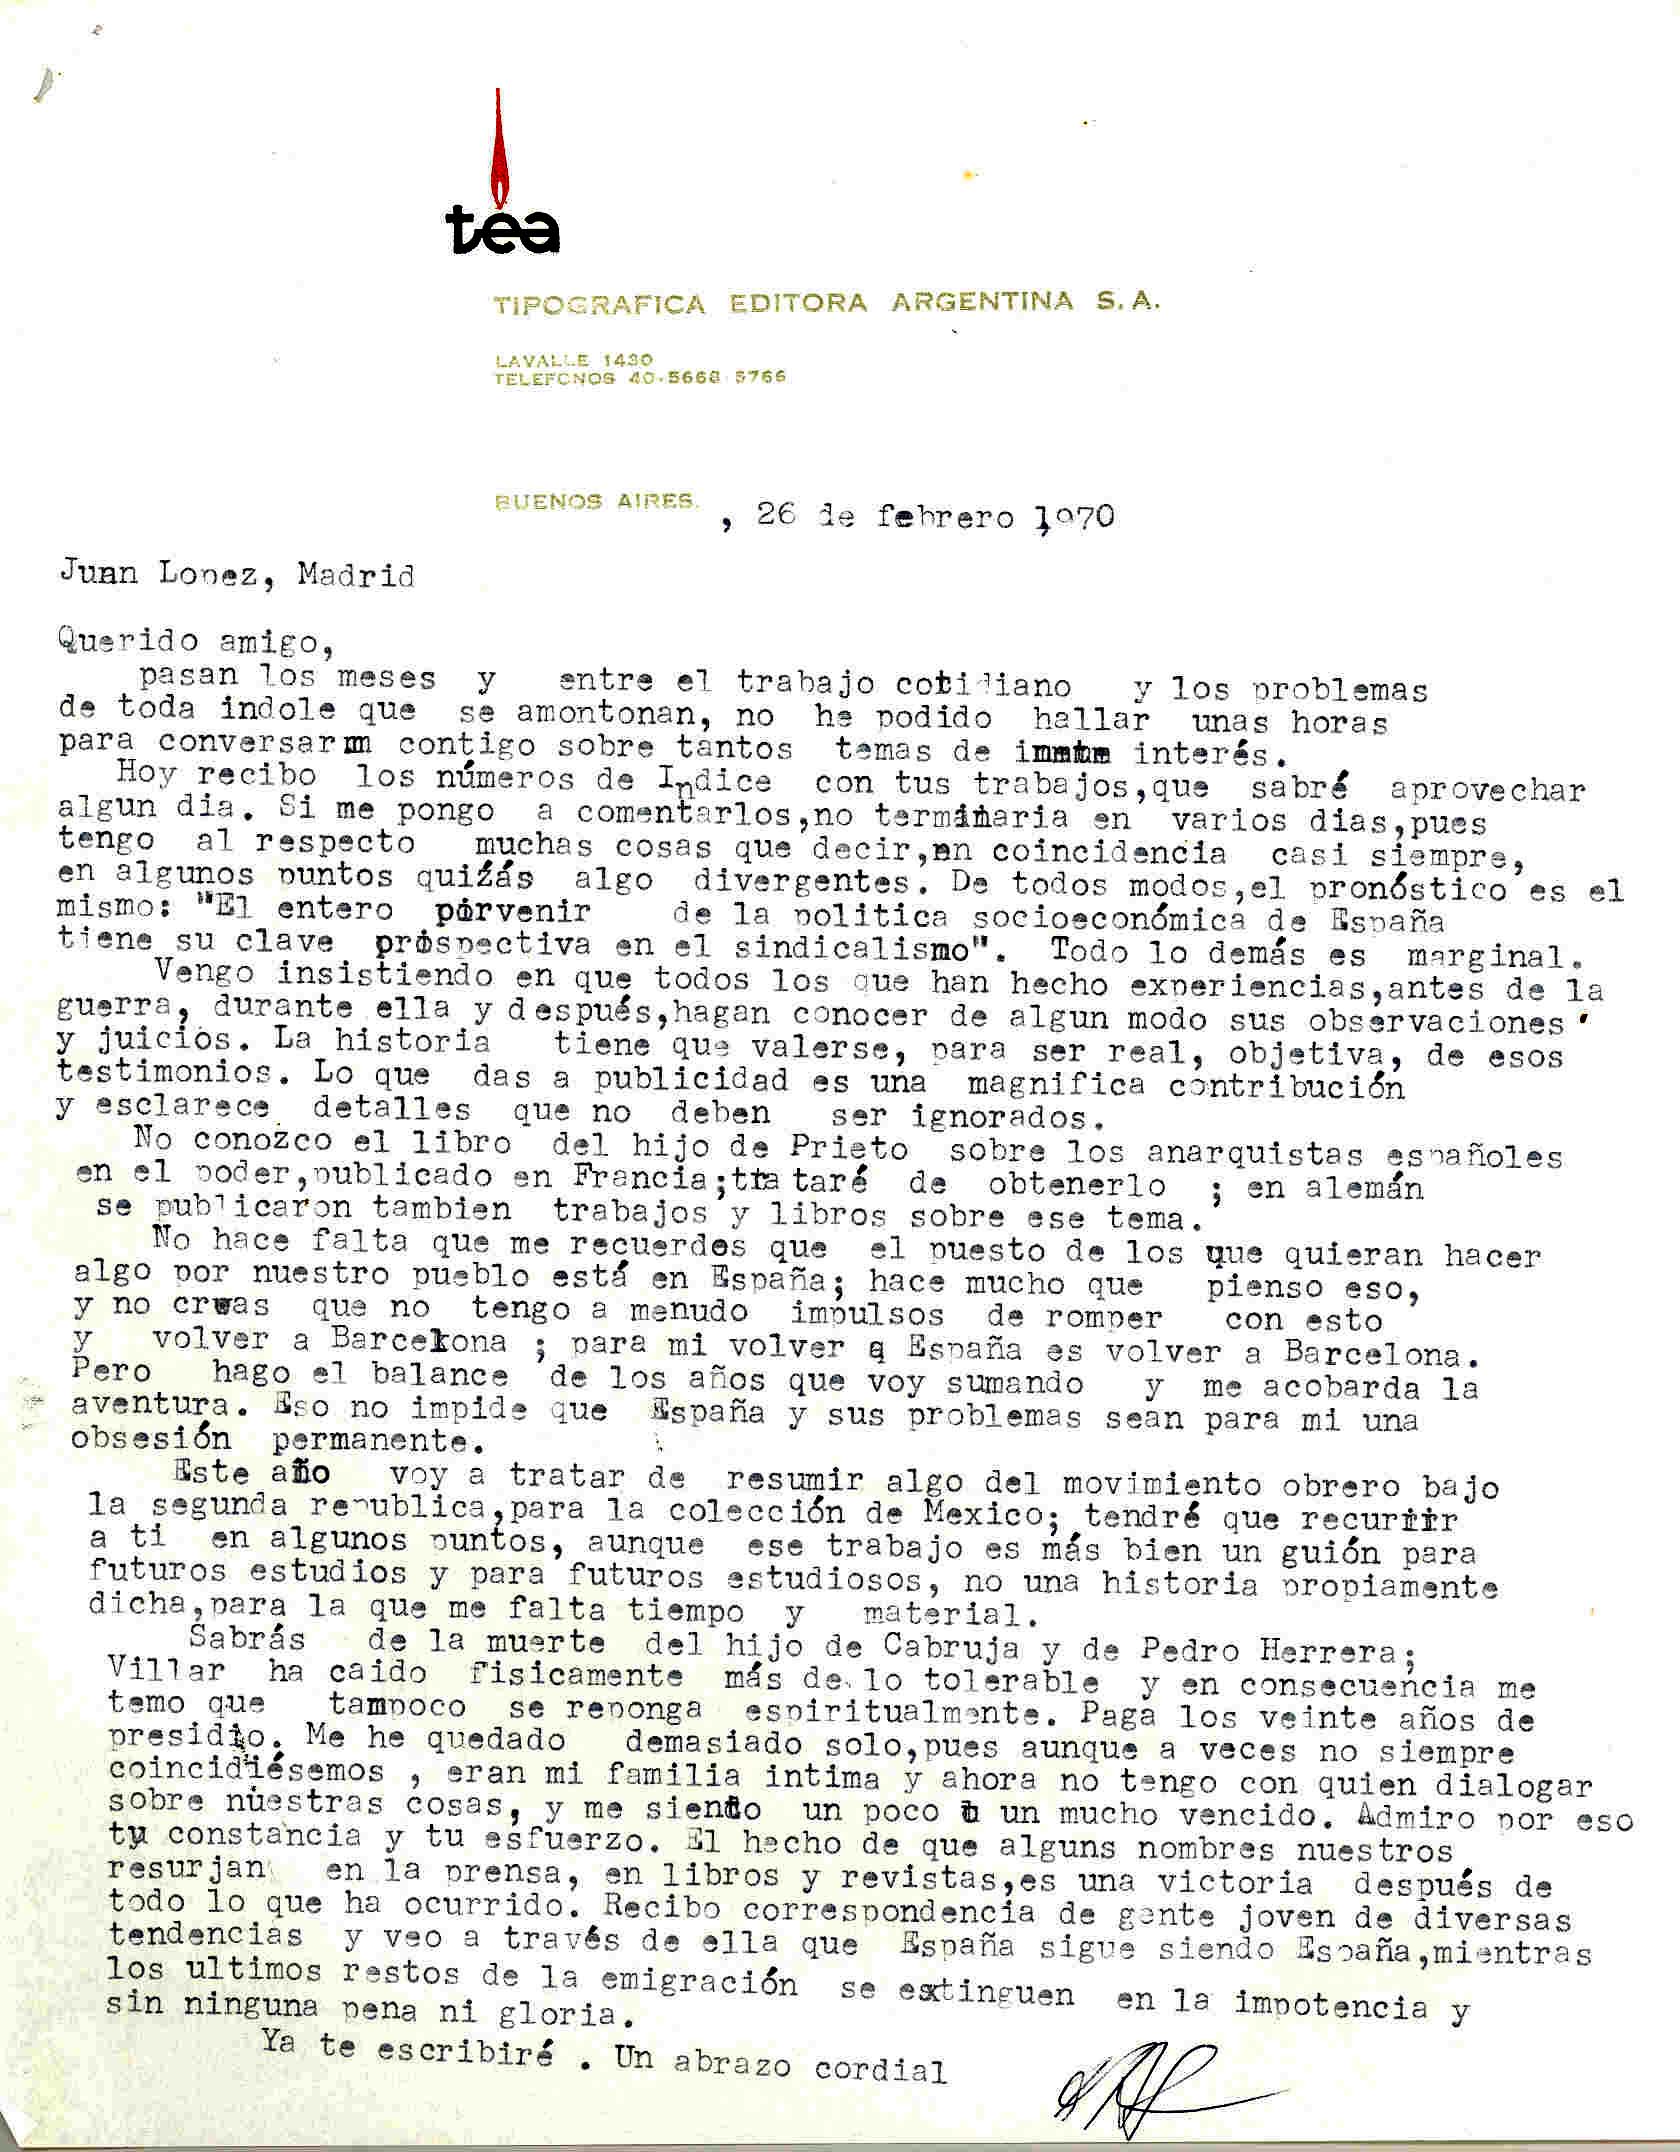 Carta de Diego Abad de Santillán sobre diversas publicaciones y problemas de España